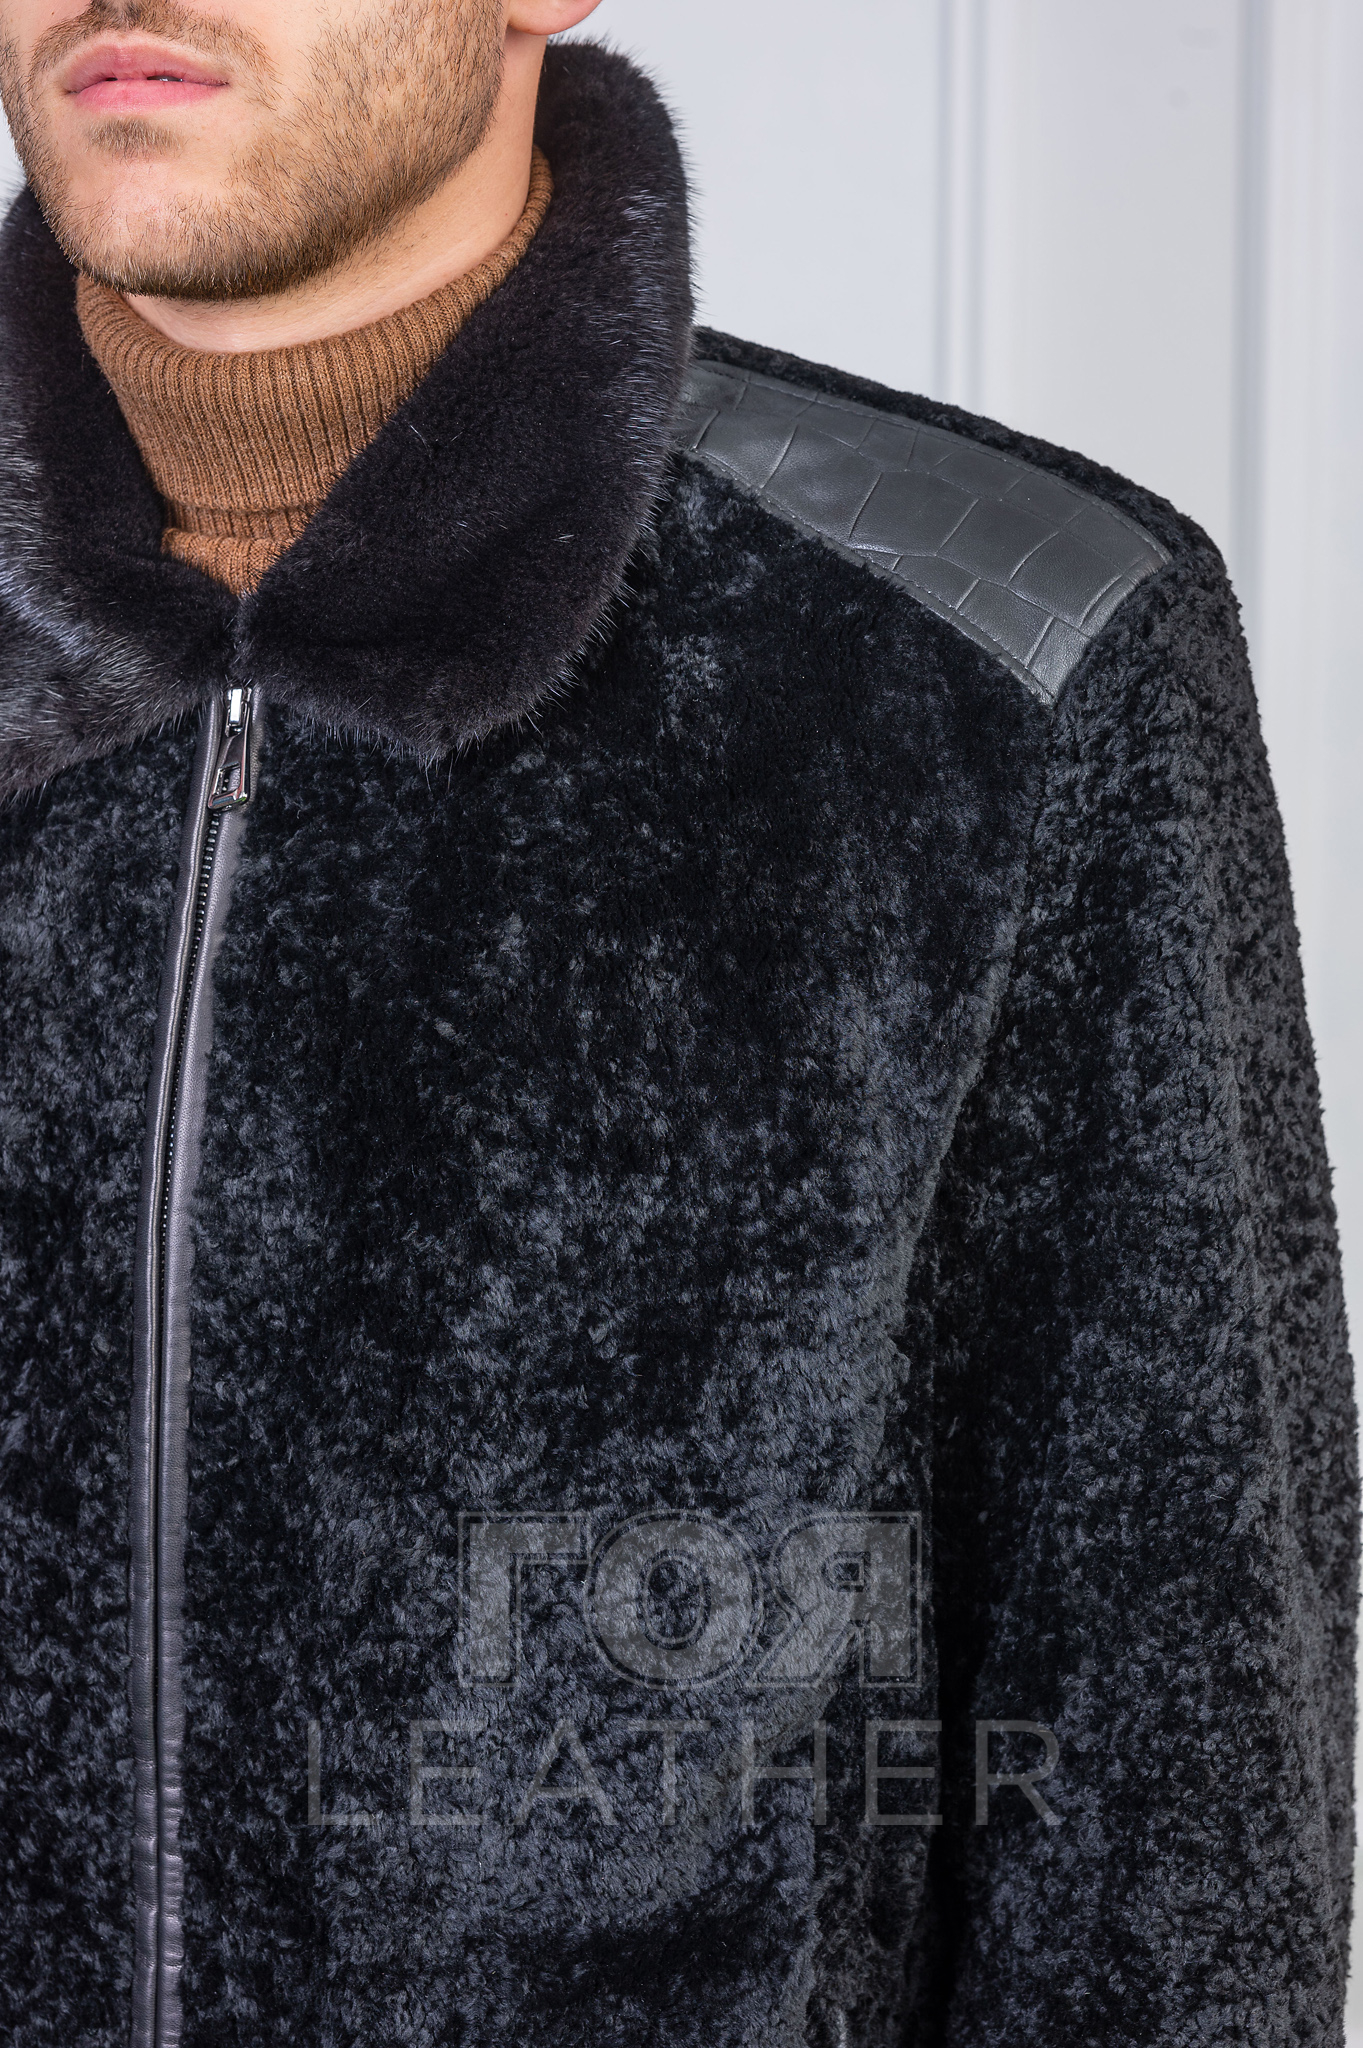 Мъжко луксозно яке от агнешки мутон. Ново предложение от ГОЯ Leather луксозно кожено яке. Моделът е изработен от висококачествен агнешки мутон с яка от норка.